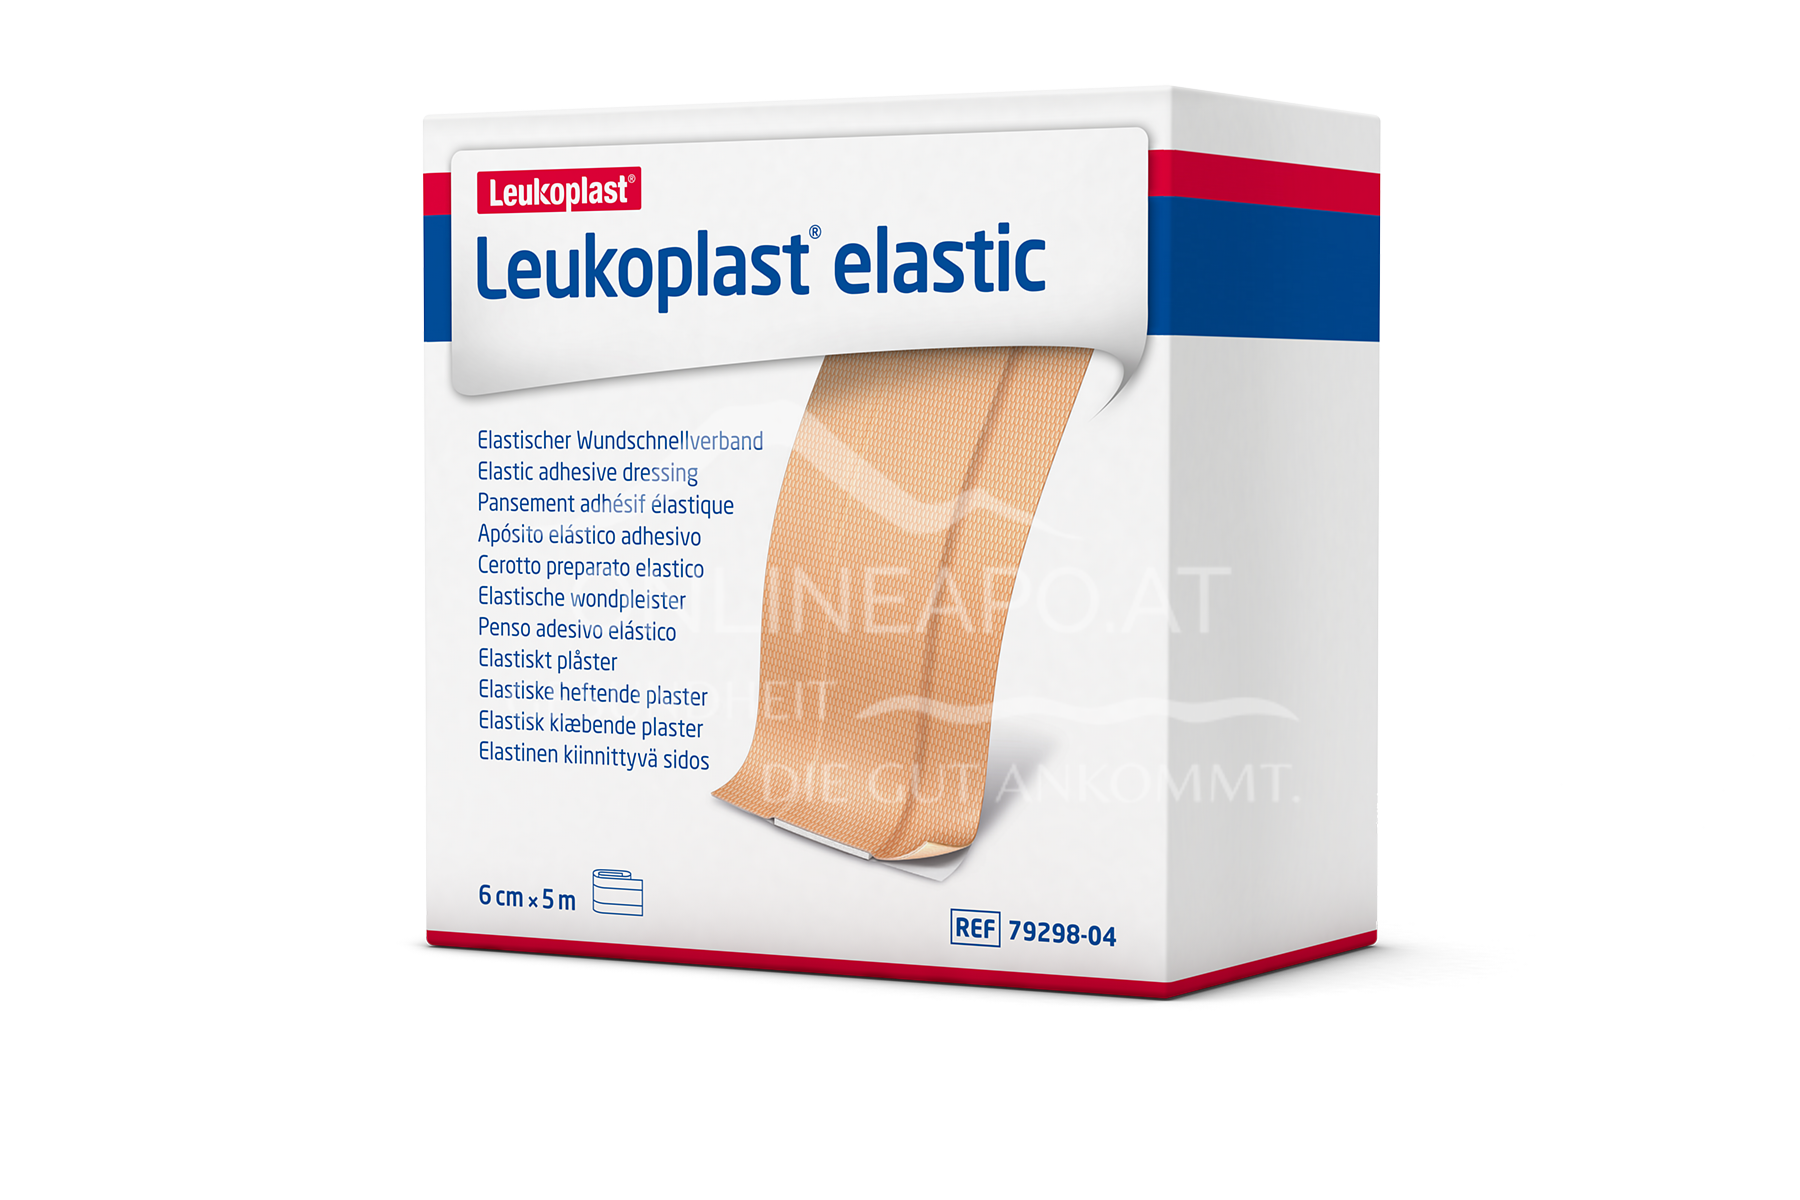 Leukoplast® Elastic Wundschnellverband 6cm x 5m